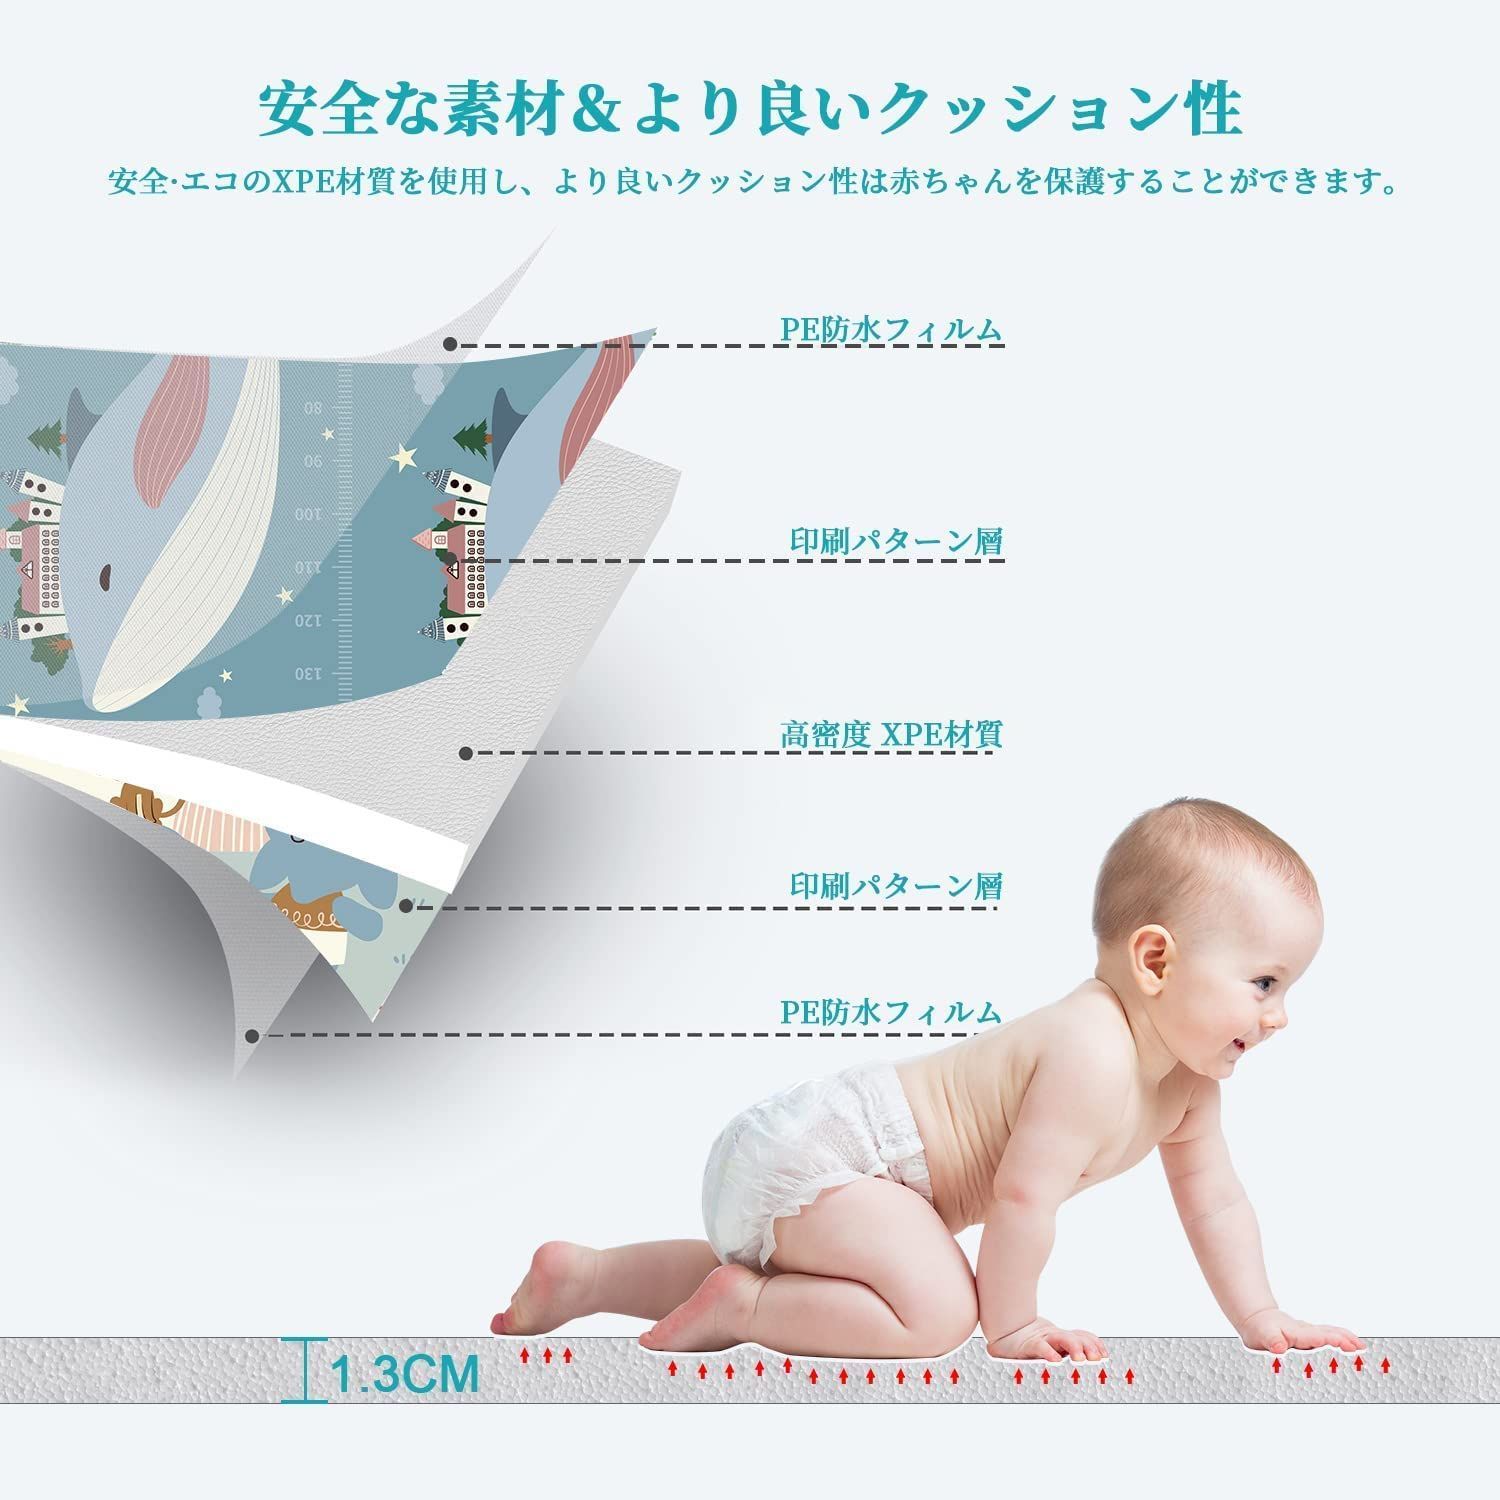 ベビーマット 200x180x極厚1.3cm 赤ちゃん プレイマット バージョン